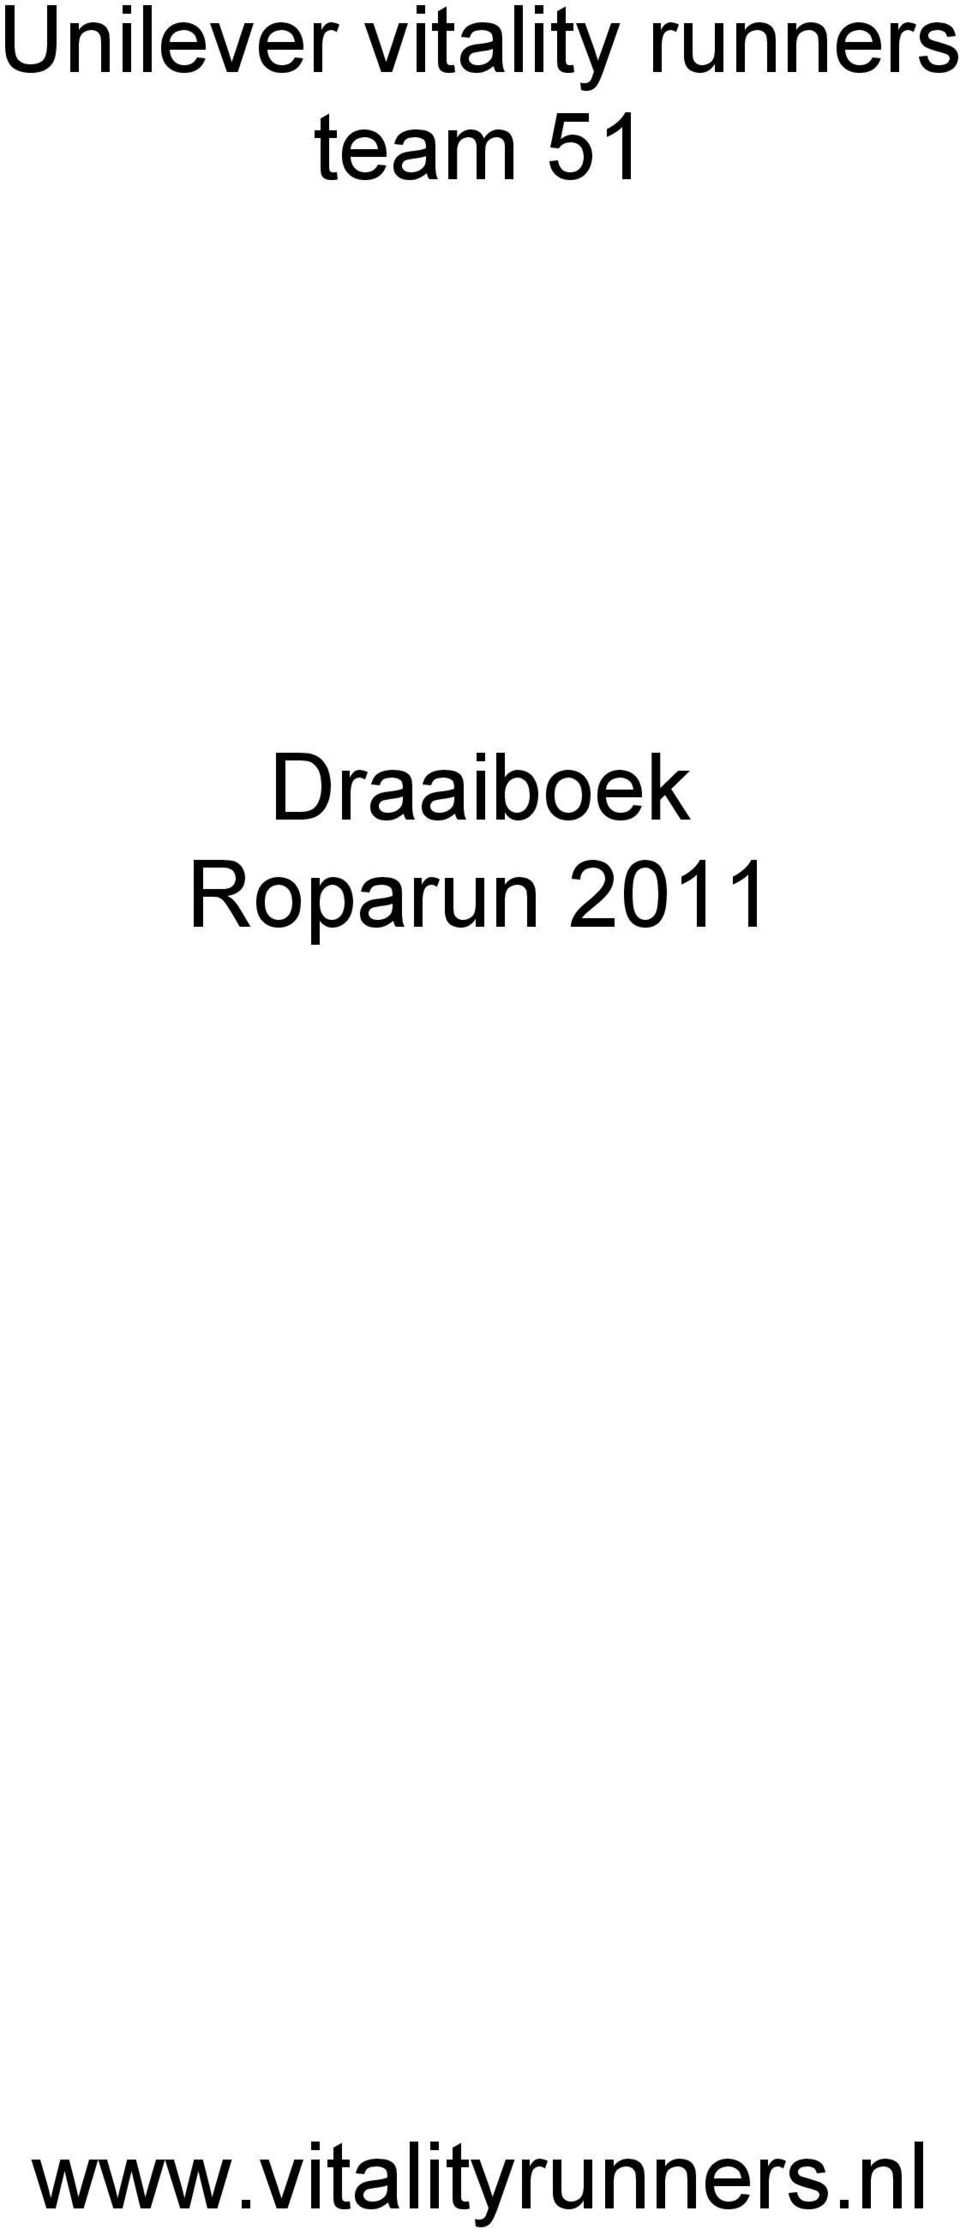 Draaiboek Roparun